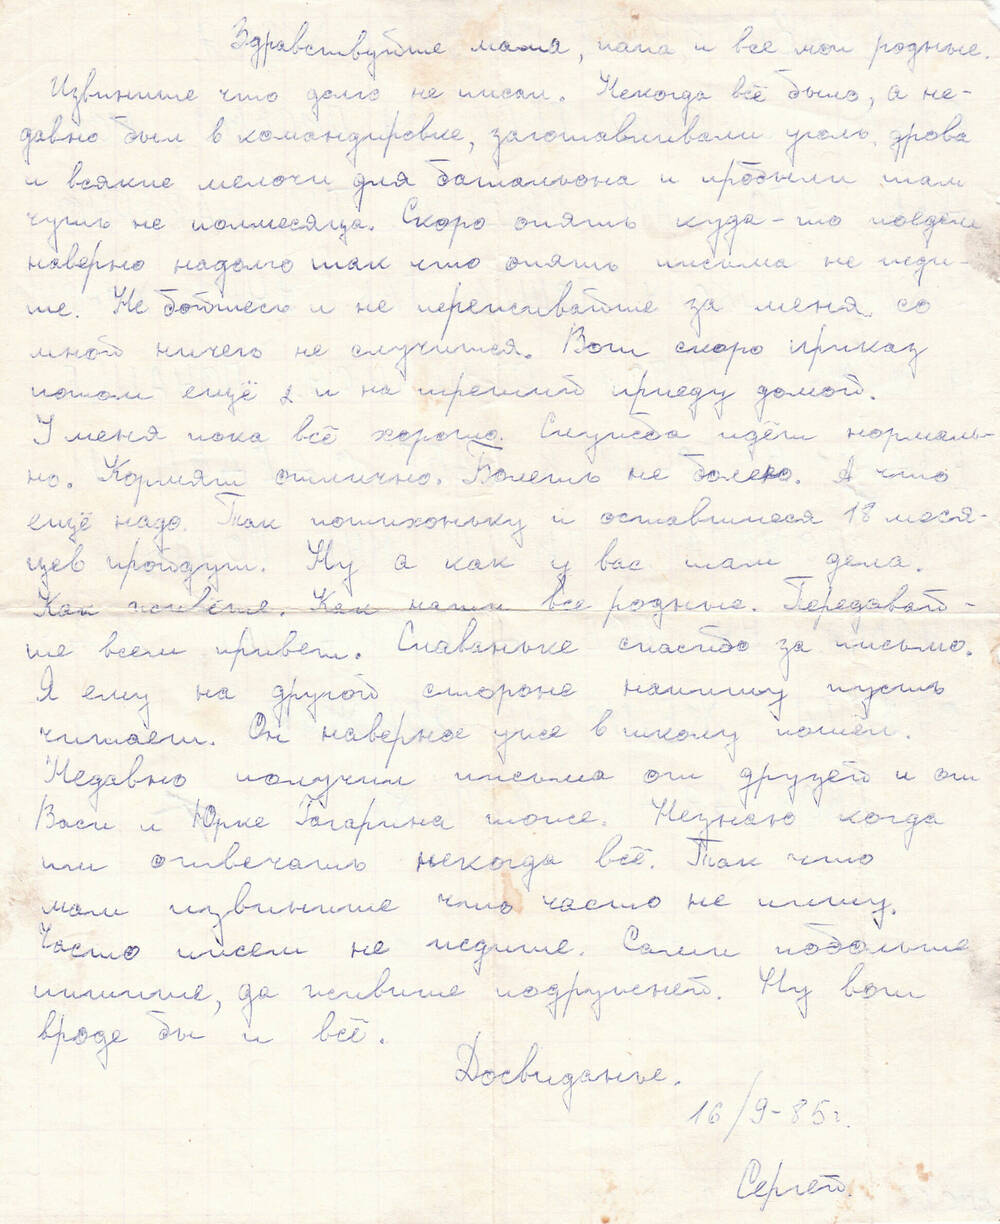 Письмо Сергея Михайловича Турина из армии, адресованное родным. С.М. Турин - участник боевых действий в Афганистане.